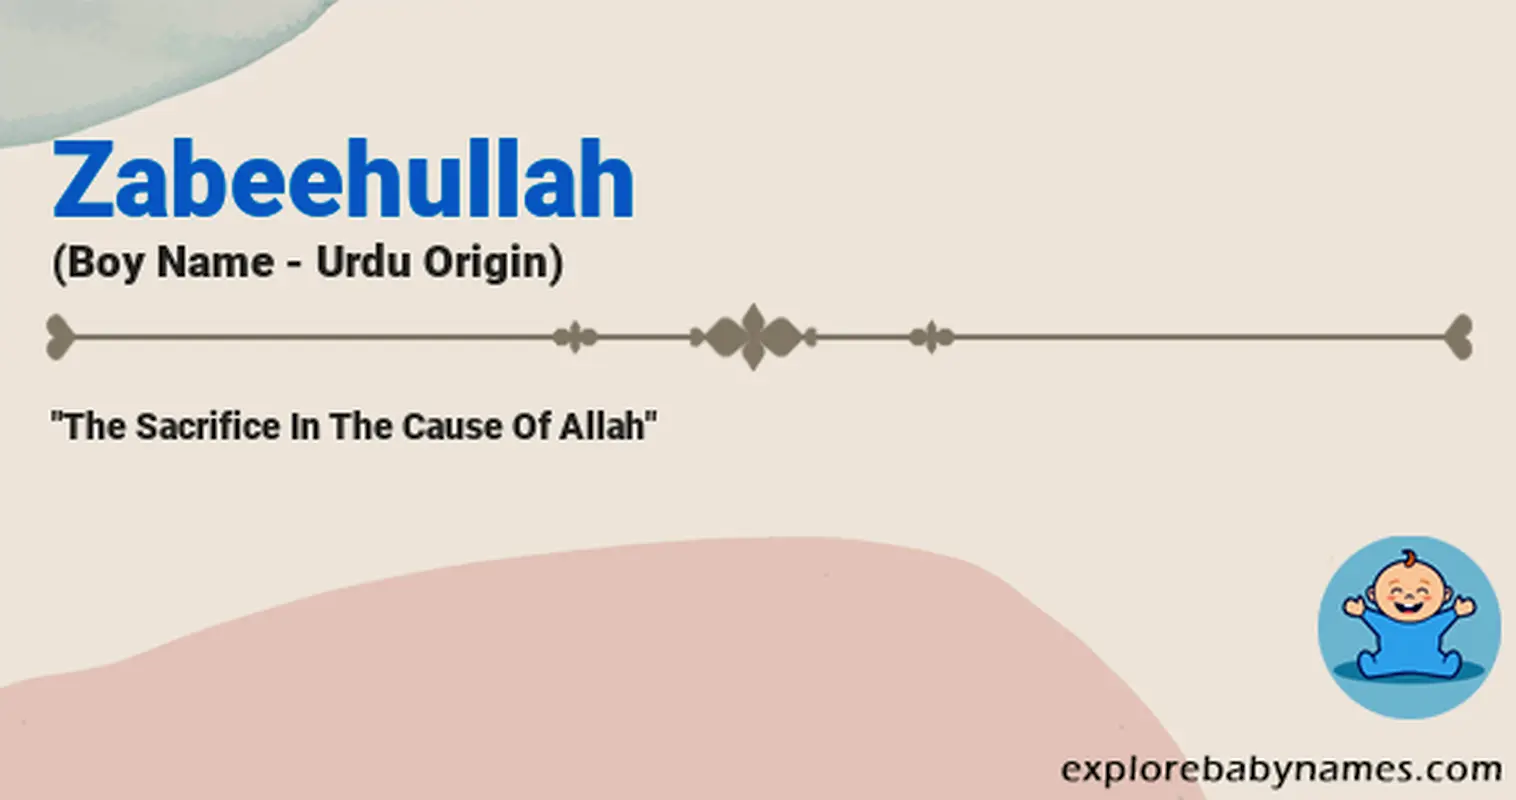 Meaning of Zabeehullah